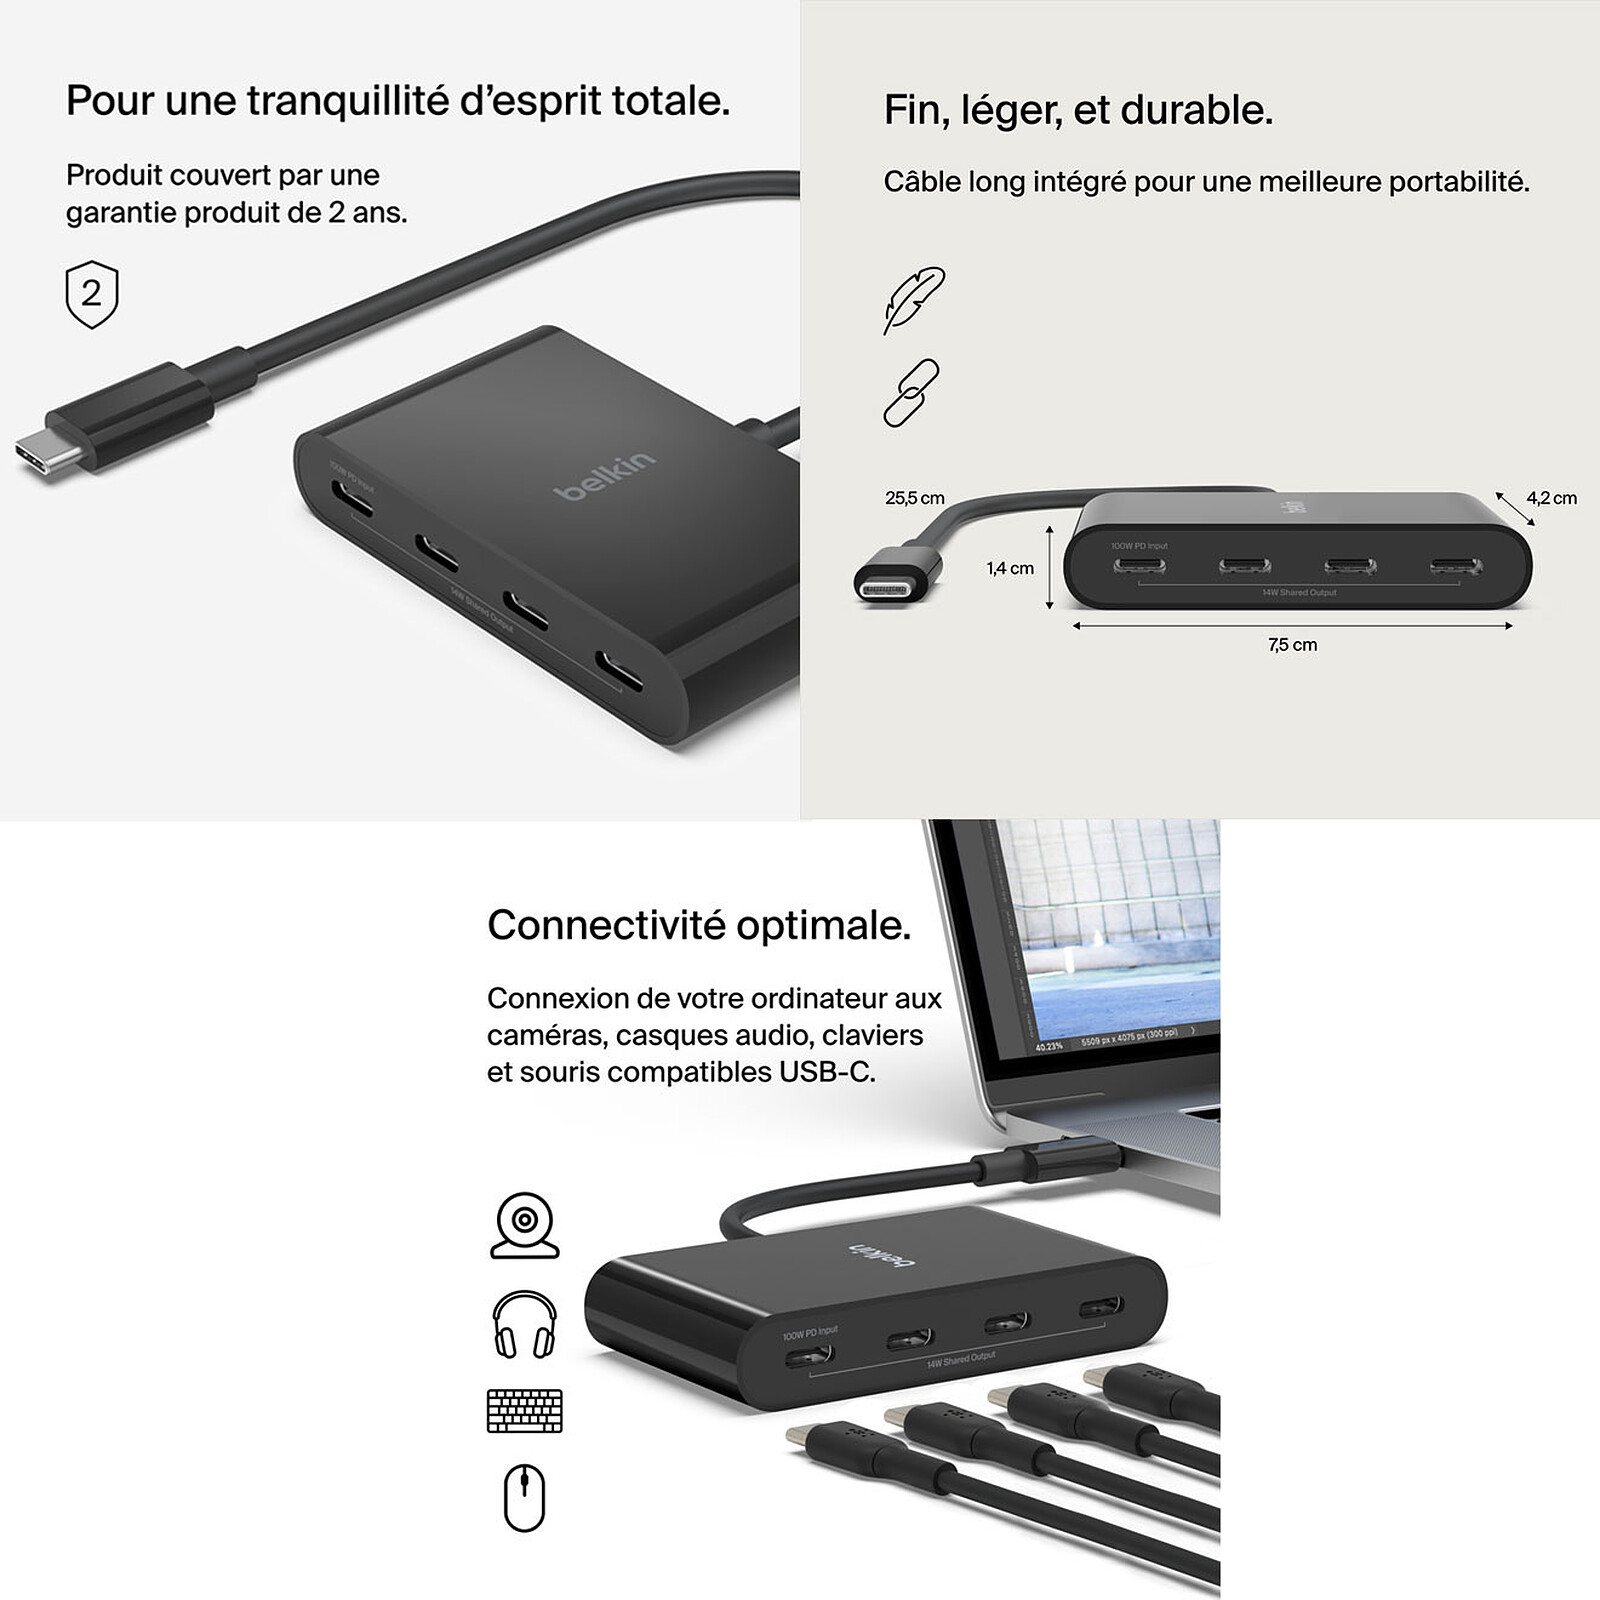 Belkin 4-Port USB-C 3.2 Gen 2 Black AVC018btBK - Best Buy